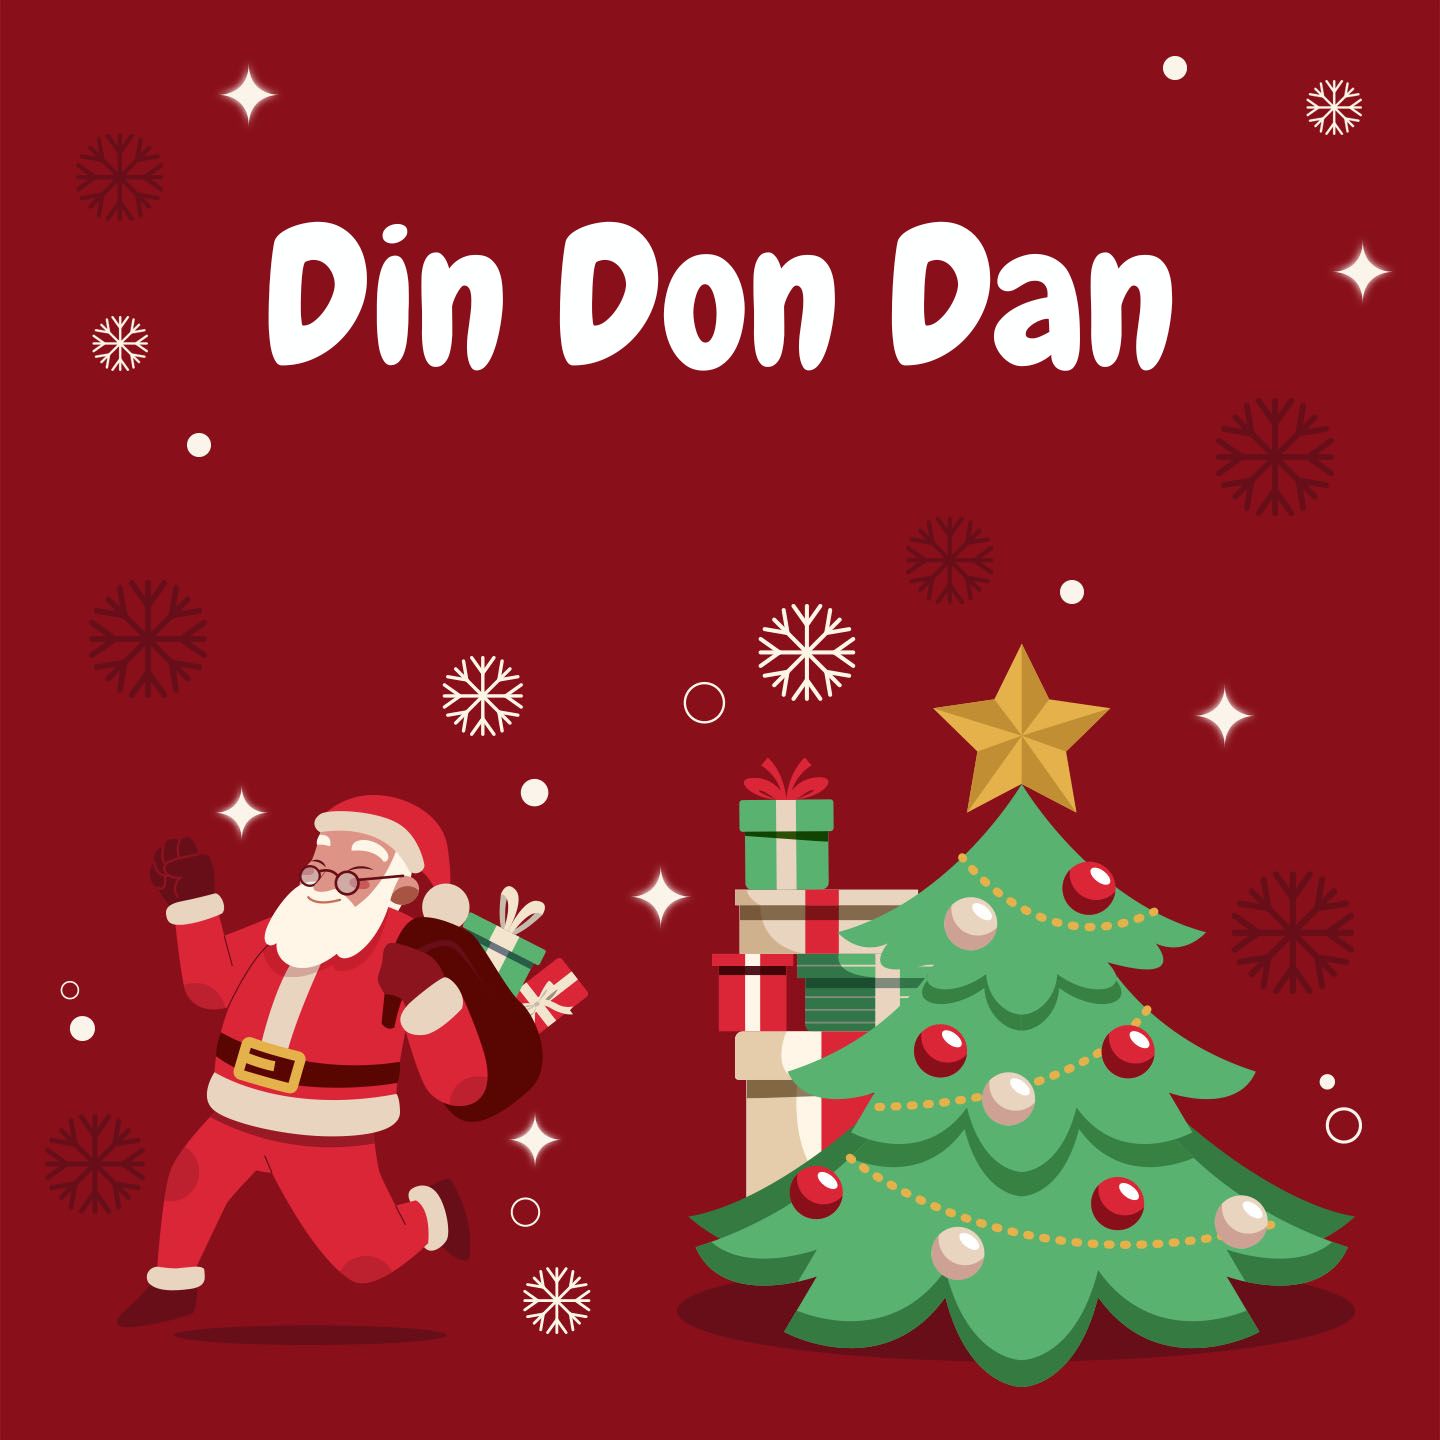 Din Don Dan